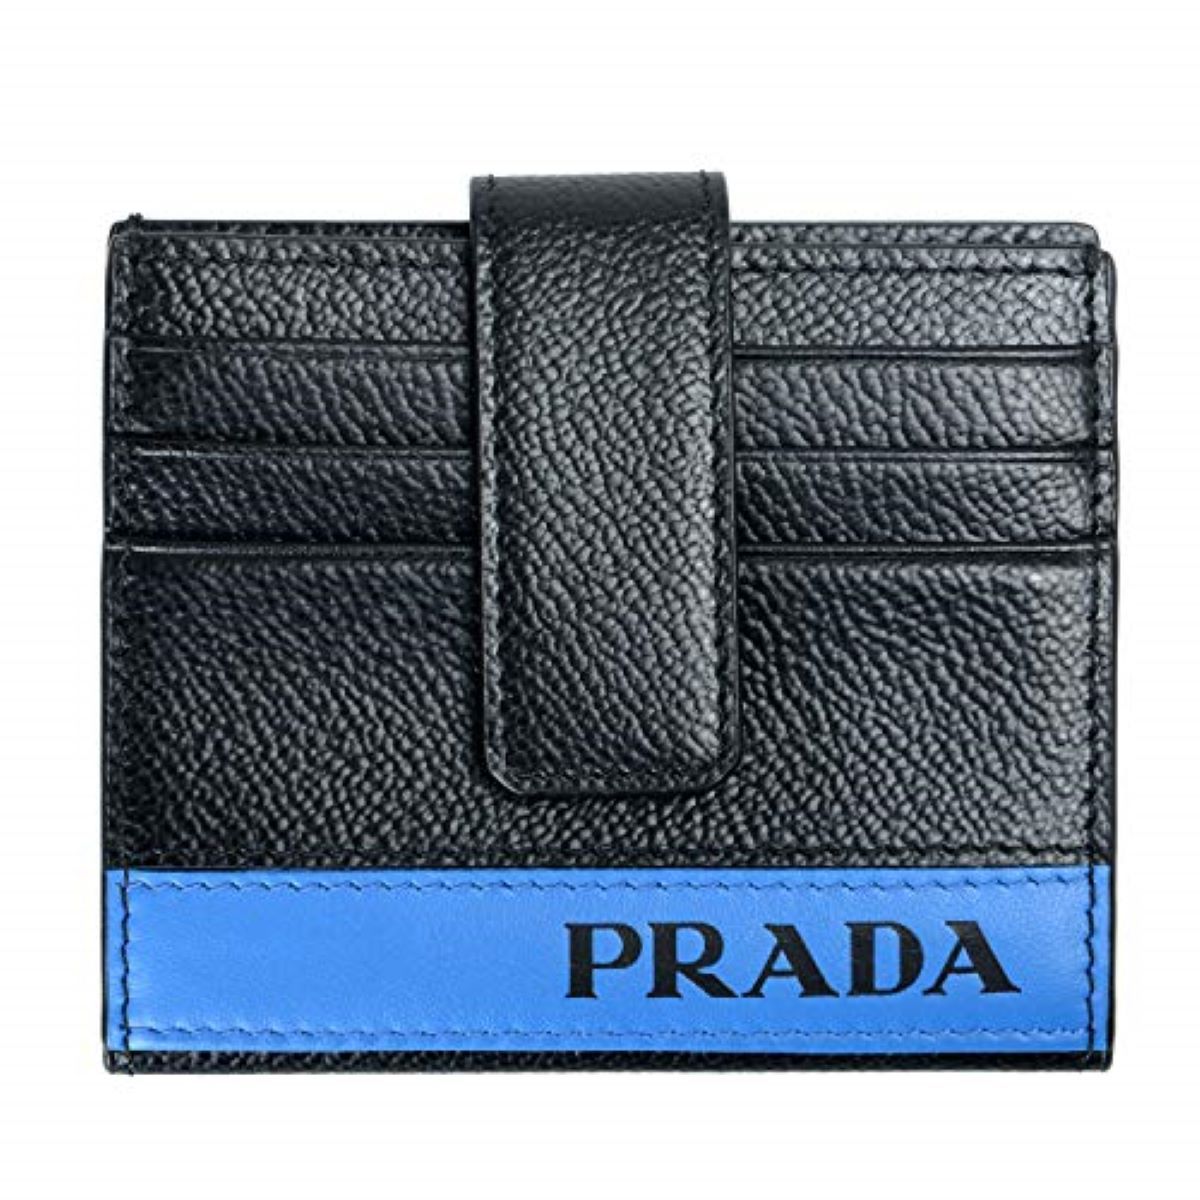 prada mens card wallet